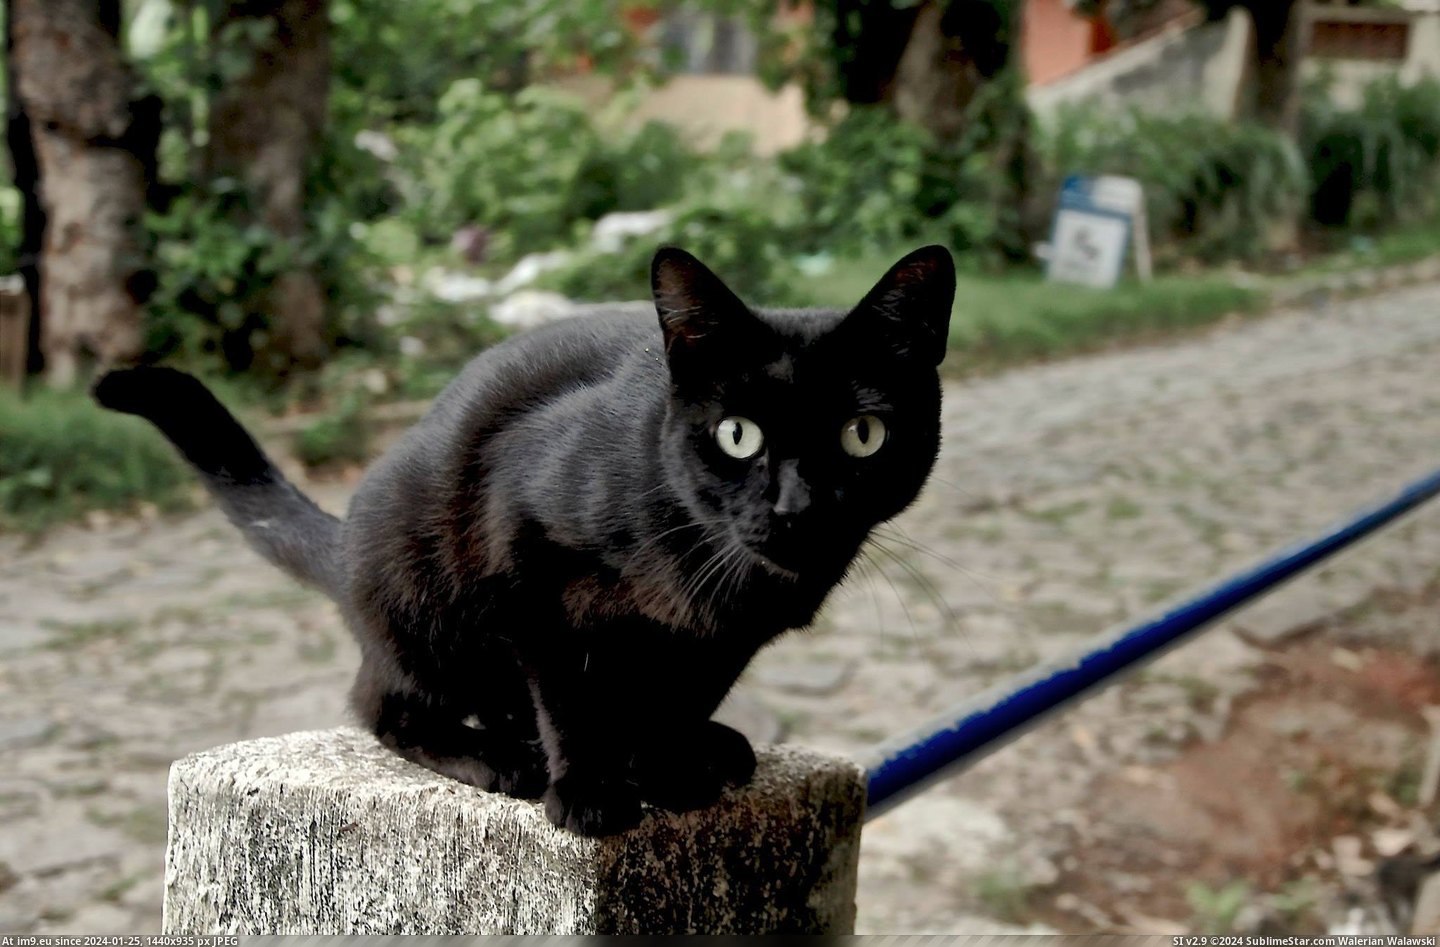 #Cats #Cat #Curious #Street #Brazilian [Cats] Just a Curious Brazilian Street Cat Pic. (Изображение из альбом My r/CATS favs))